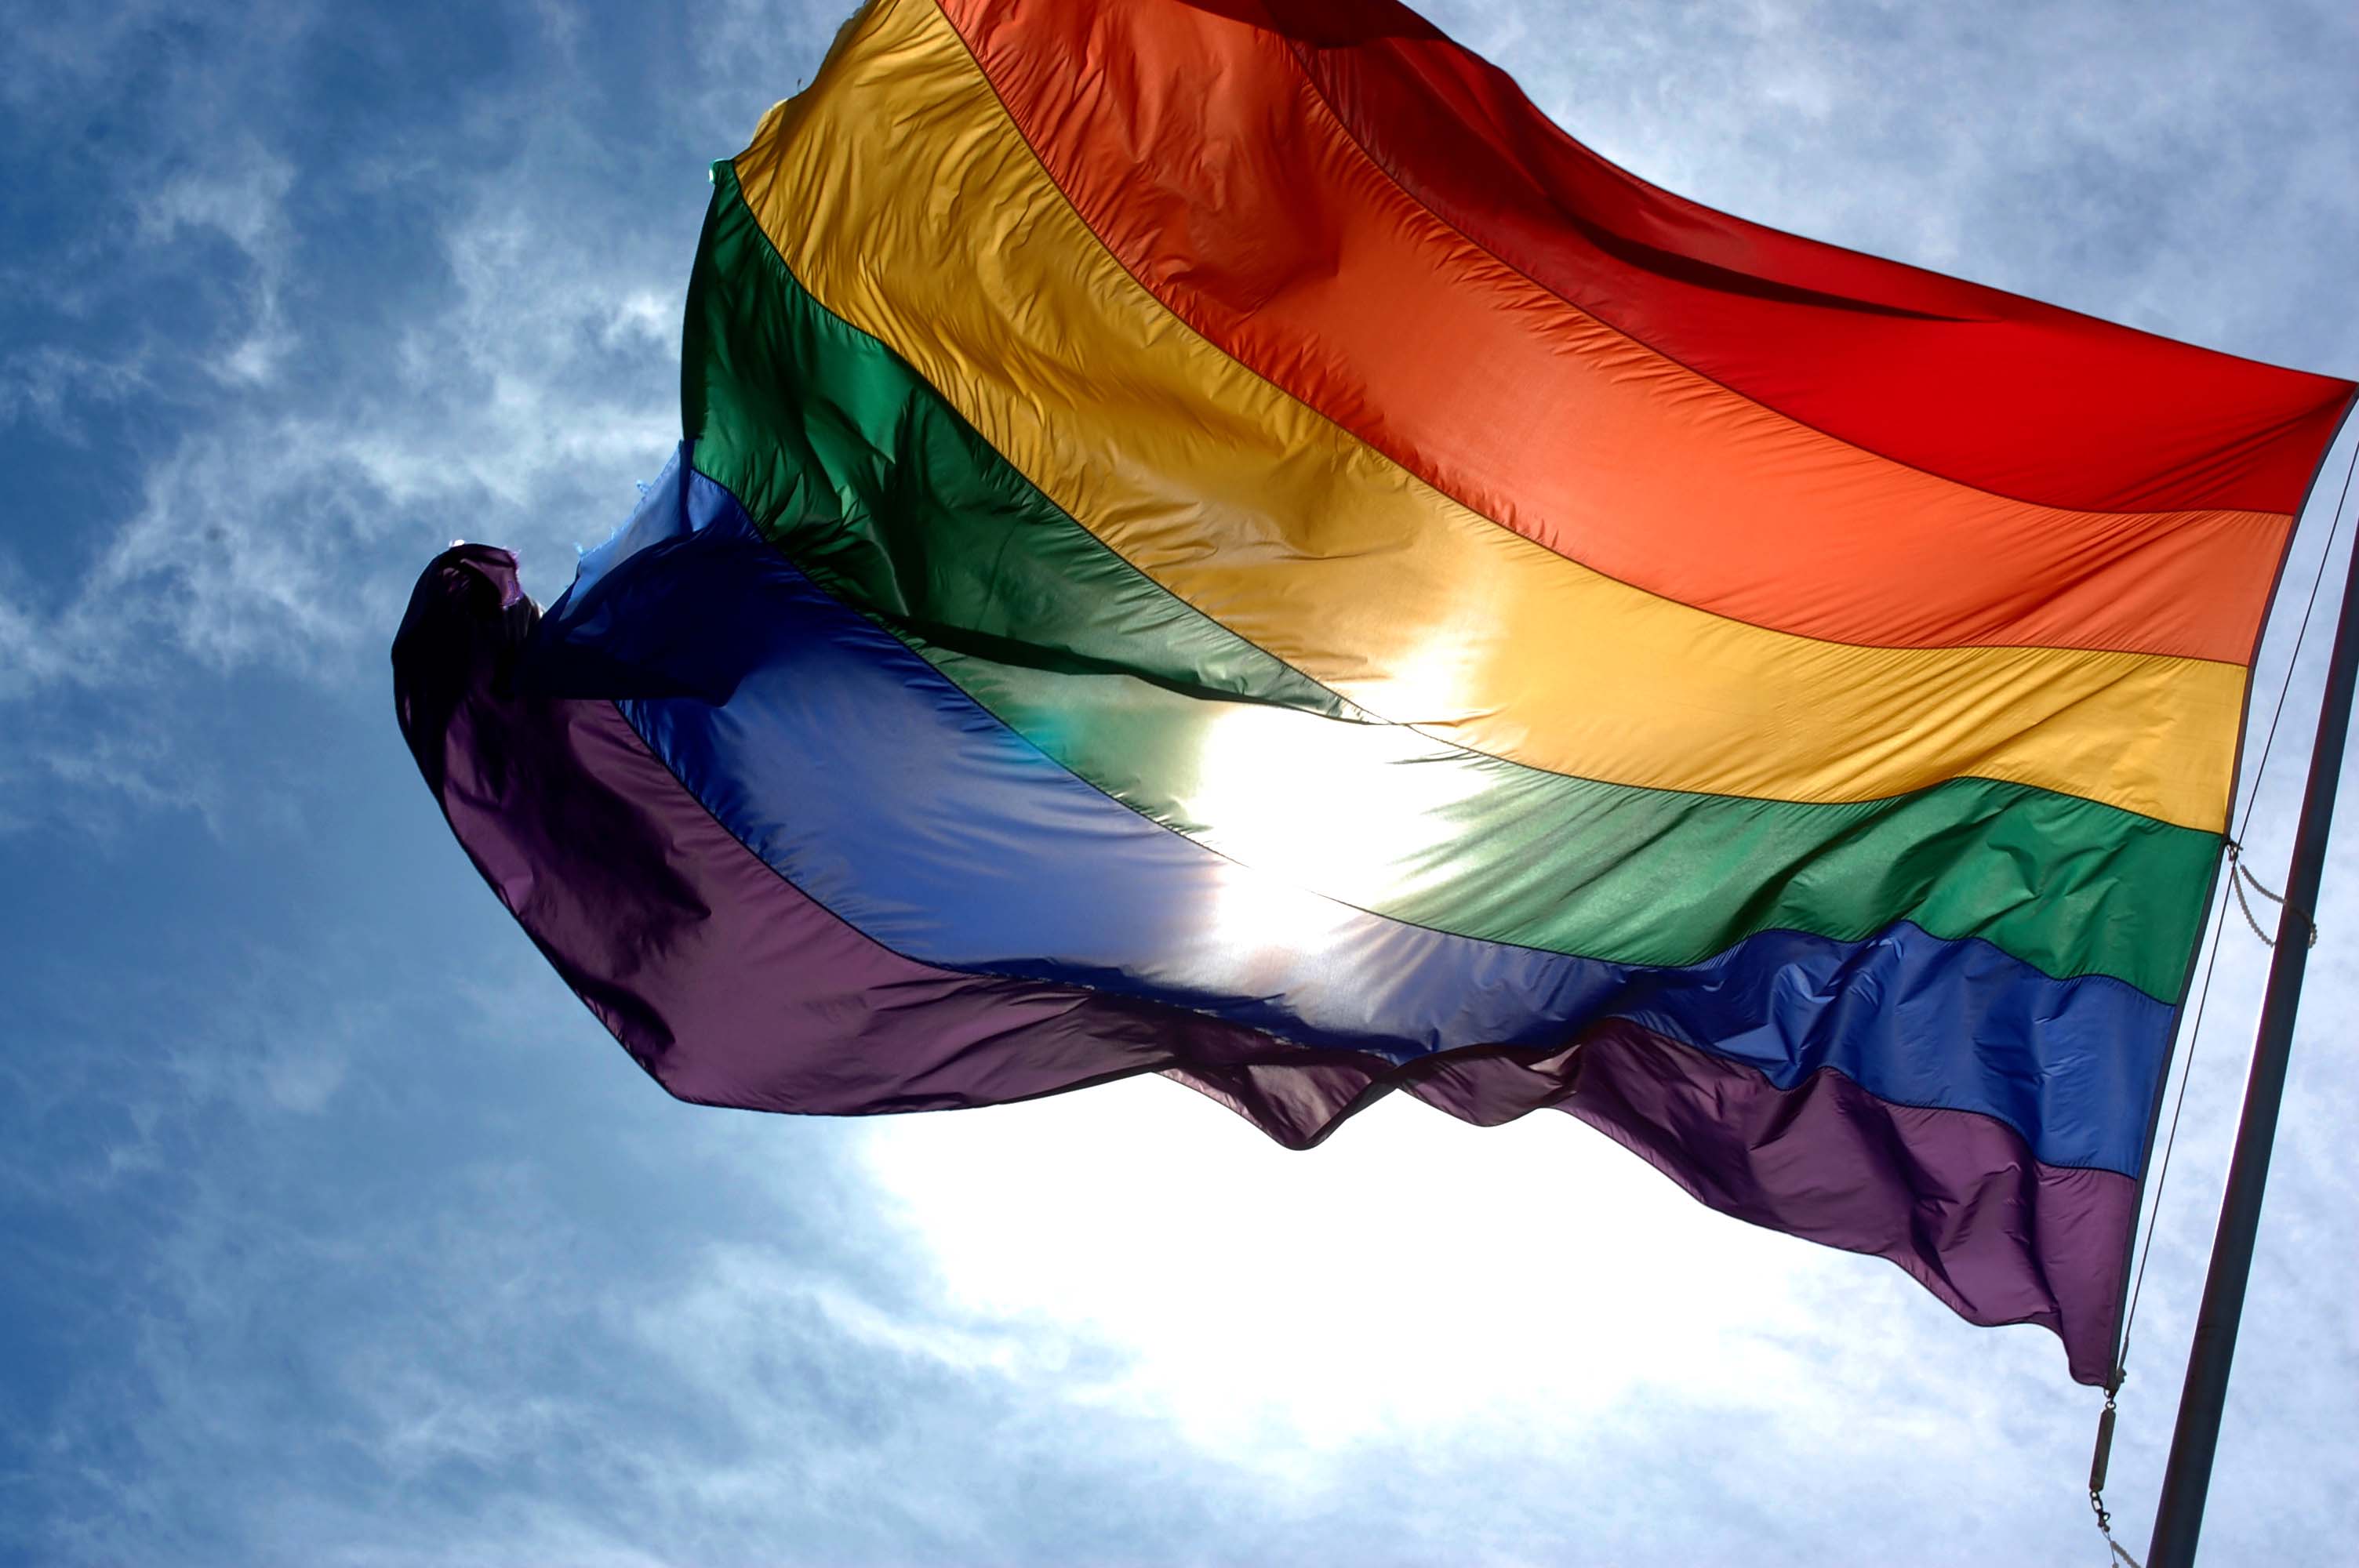 LGBT bayrağı nedir, bayrağın anlamı nedir? Renkler neyi ifade ediyor? LGBT açılımı nedir? 